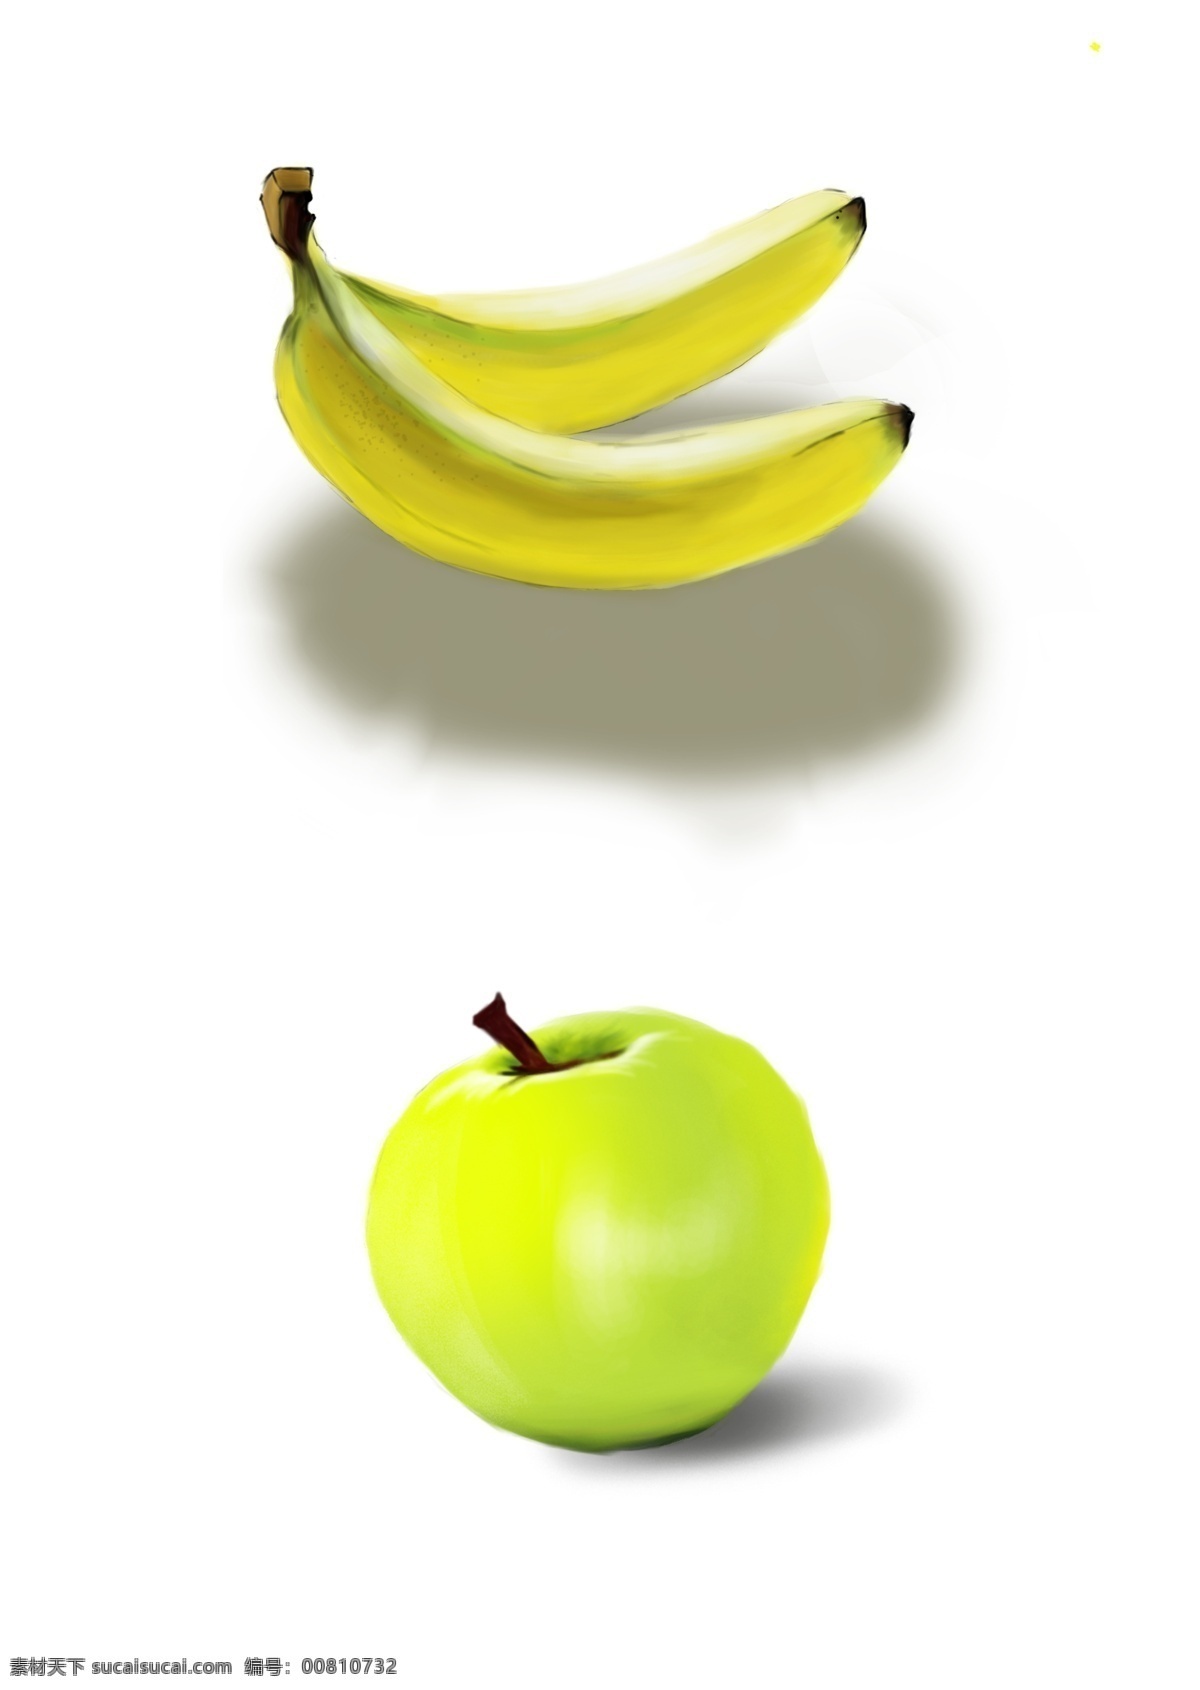 水果 手绘 苹果 香蕉 元素 水果手绘 苹果香蕉 素材元素